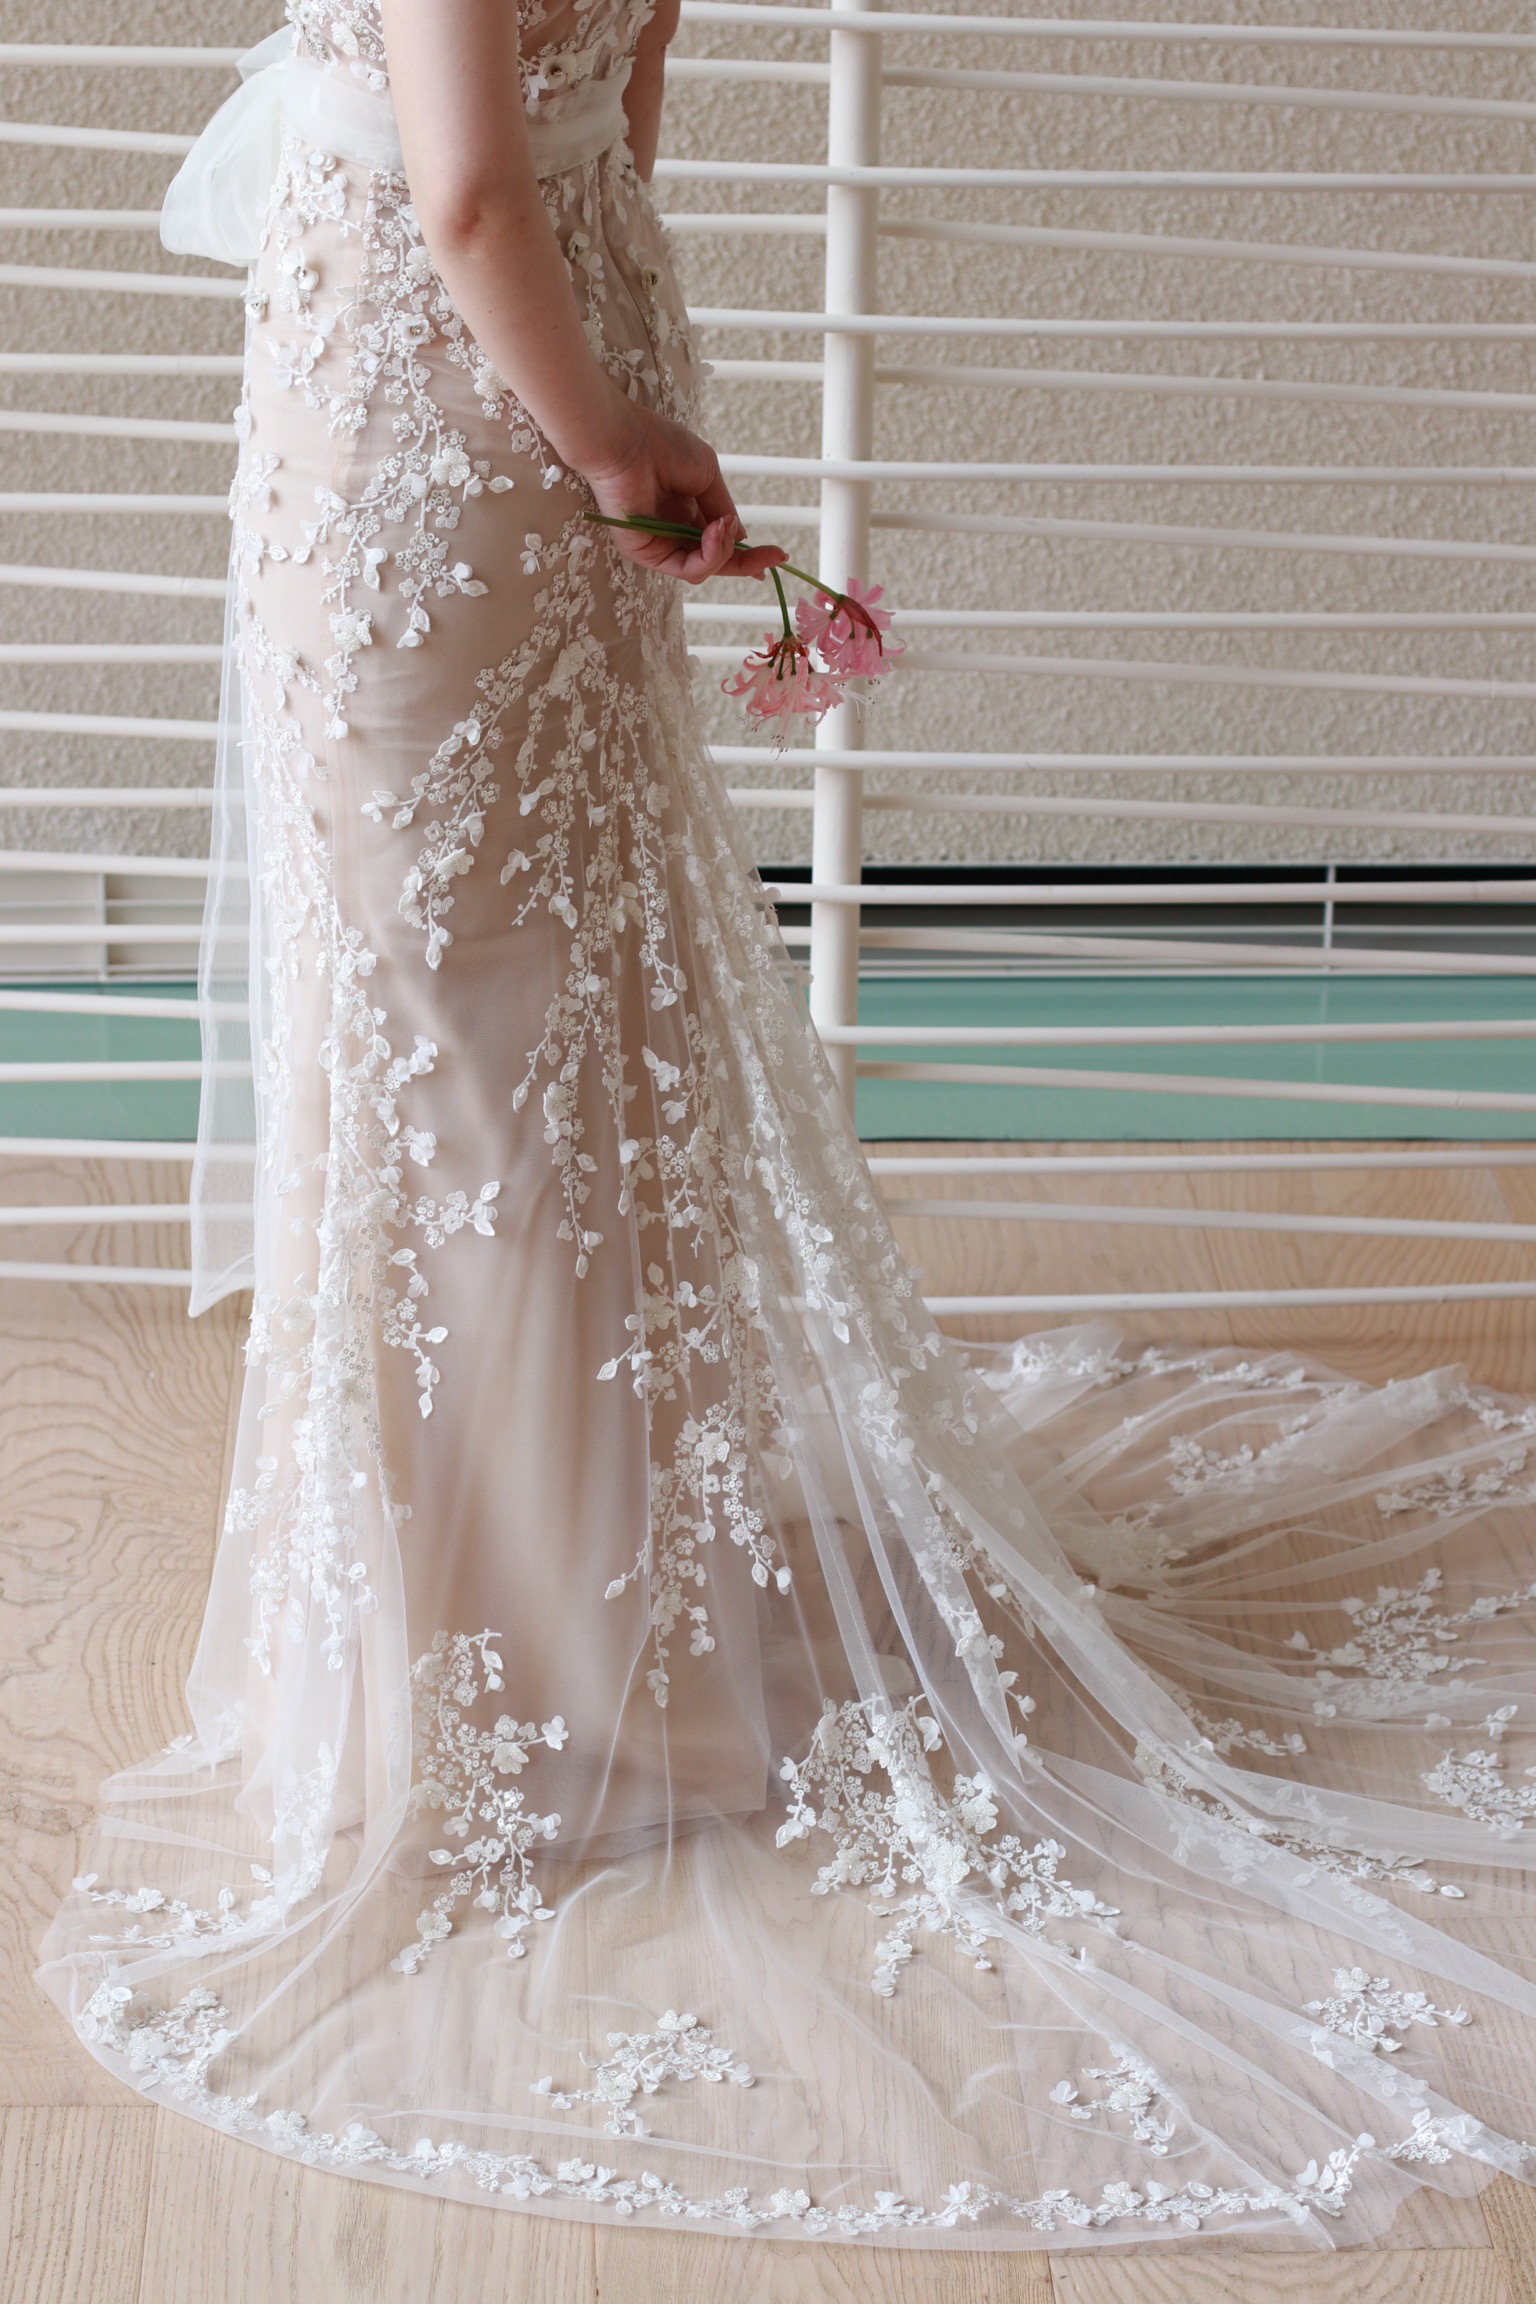 パレスホテル東京の花嫁におすすめしたいリズマルチネスのウェディングドレスは、スカートまでたっぷりと装飾があしらわれています。一枚のチュールにデザインされたビーディングは、透明感と特別感を演出します。